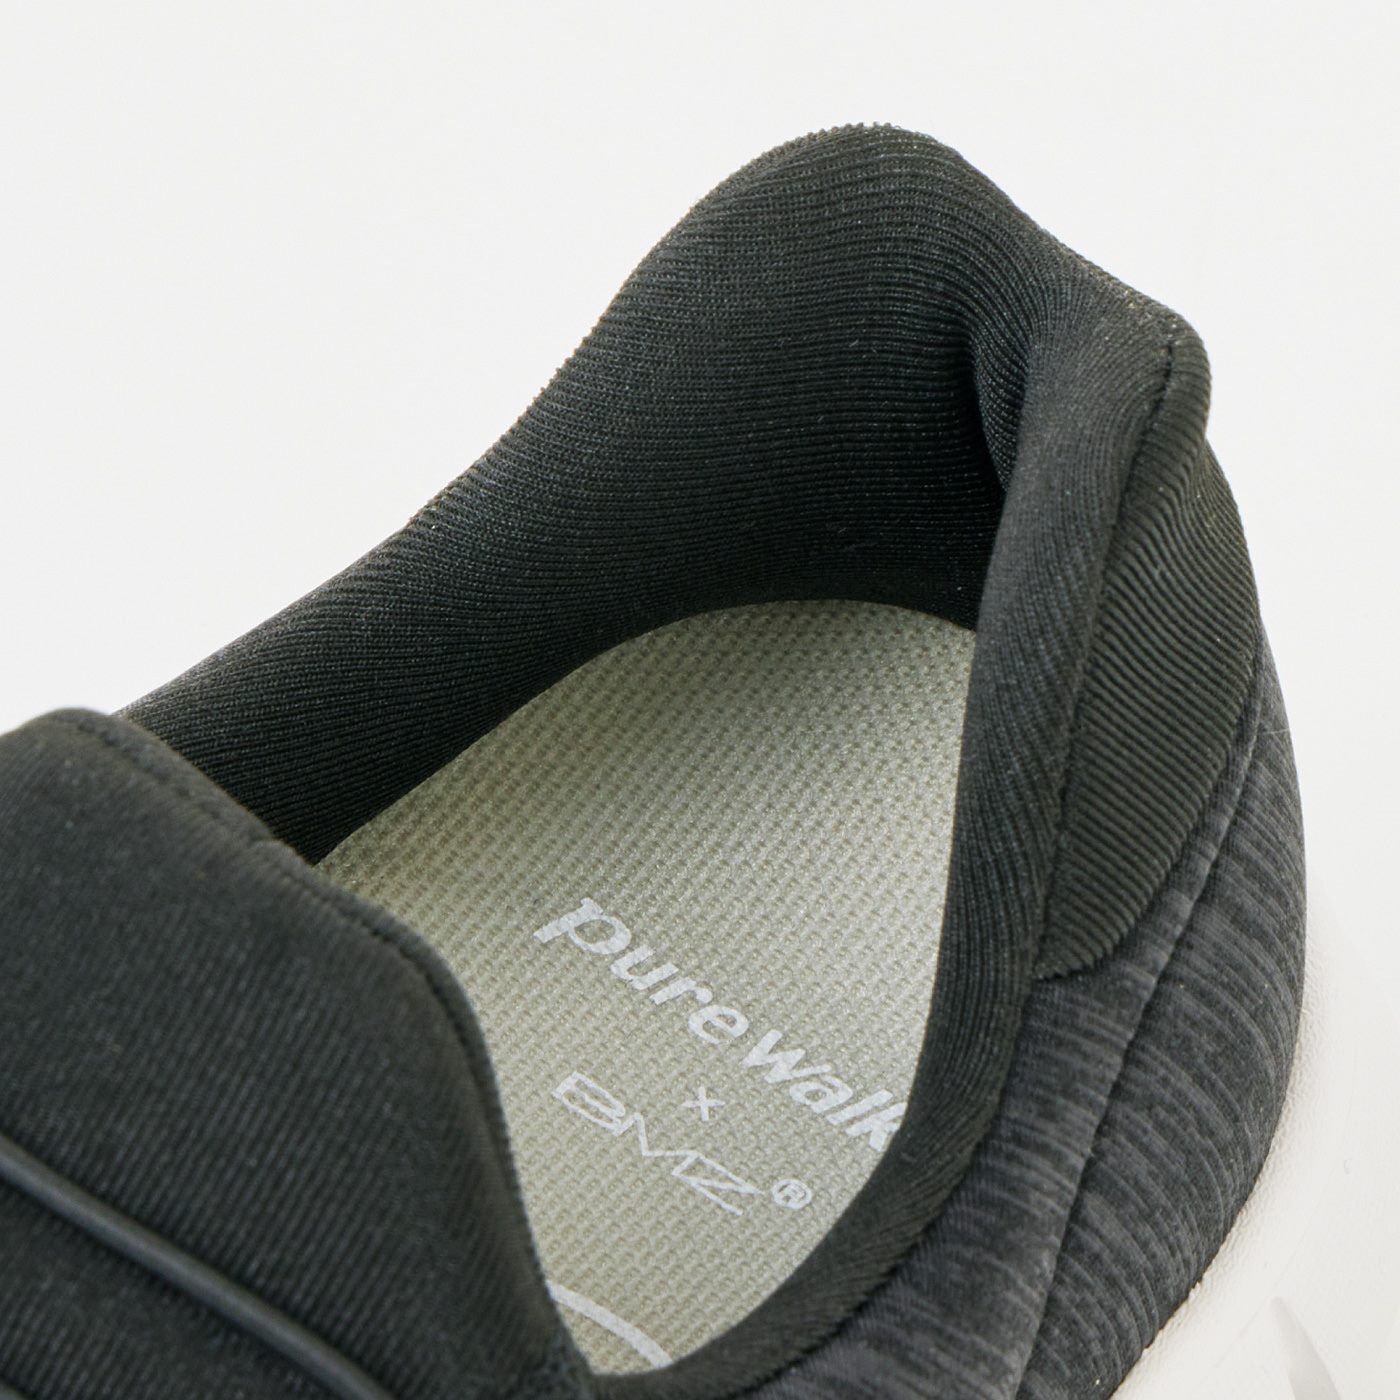 L'AMIPLUS|ラミプリュス　特殊形状のかかとで折れずにスルッと脱ぎ履き　上品見えスニーカー〈杢（もく）ブラック〉|靴べらみたいな特殊形状のかかとが脱ぎ履きをサポートします。